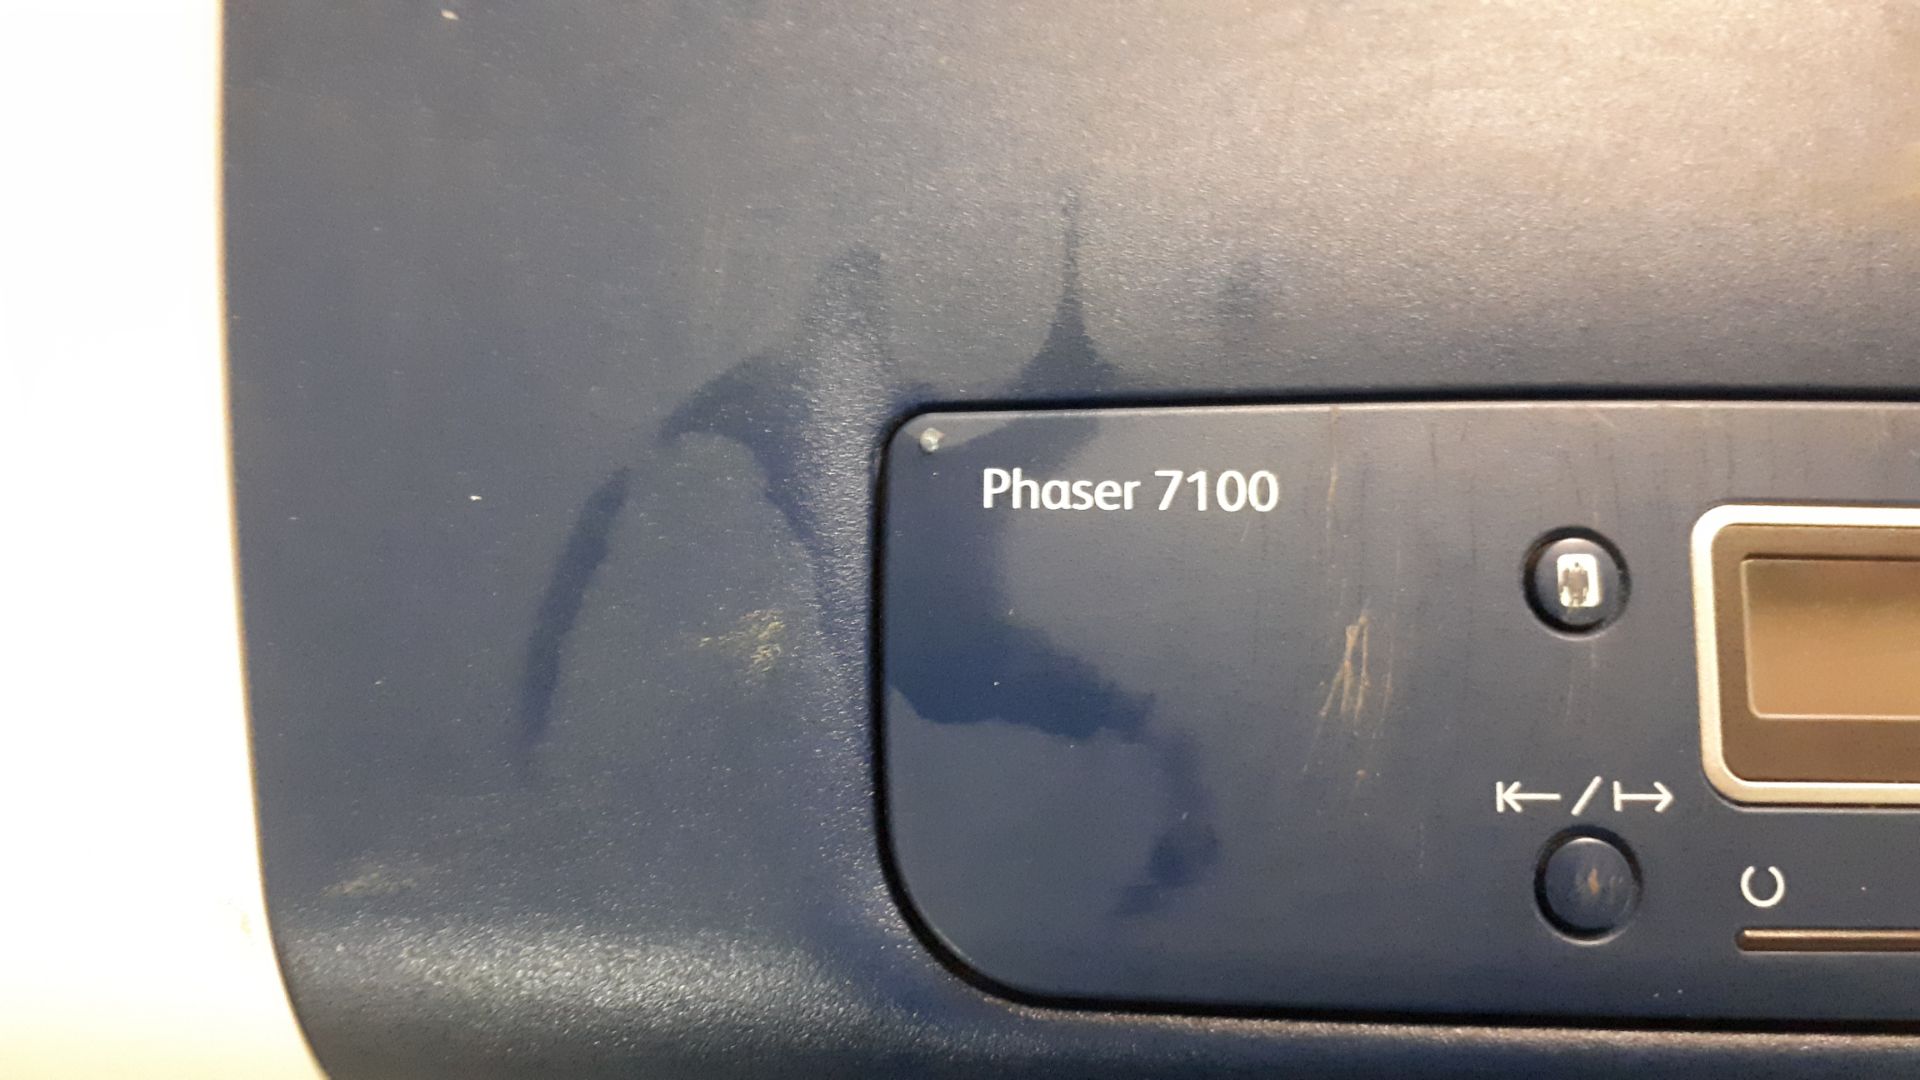 Xerox Phaser 7100 printer - Image 2 of 2